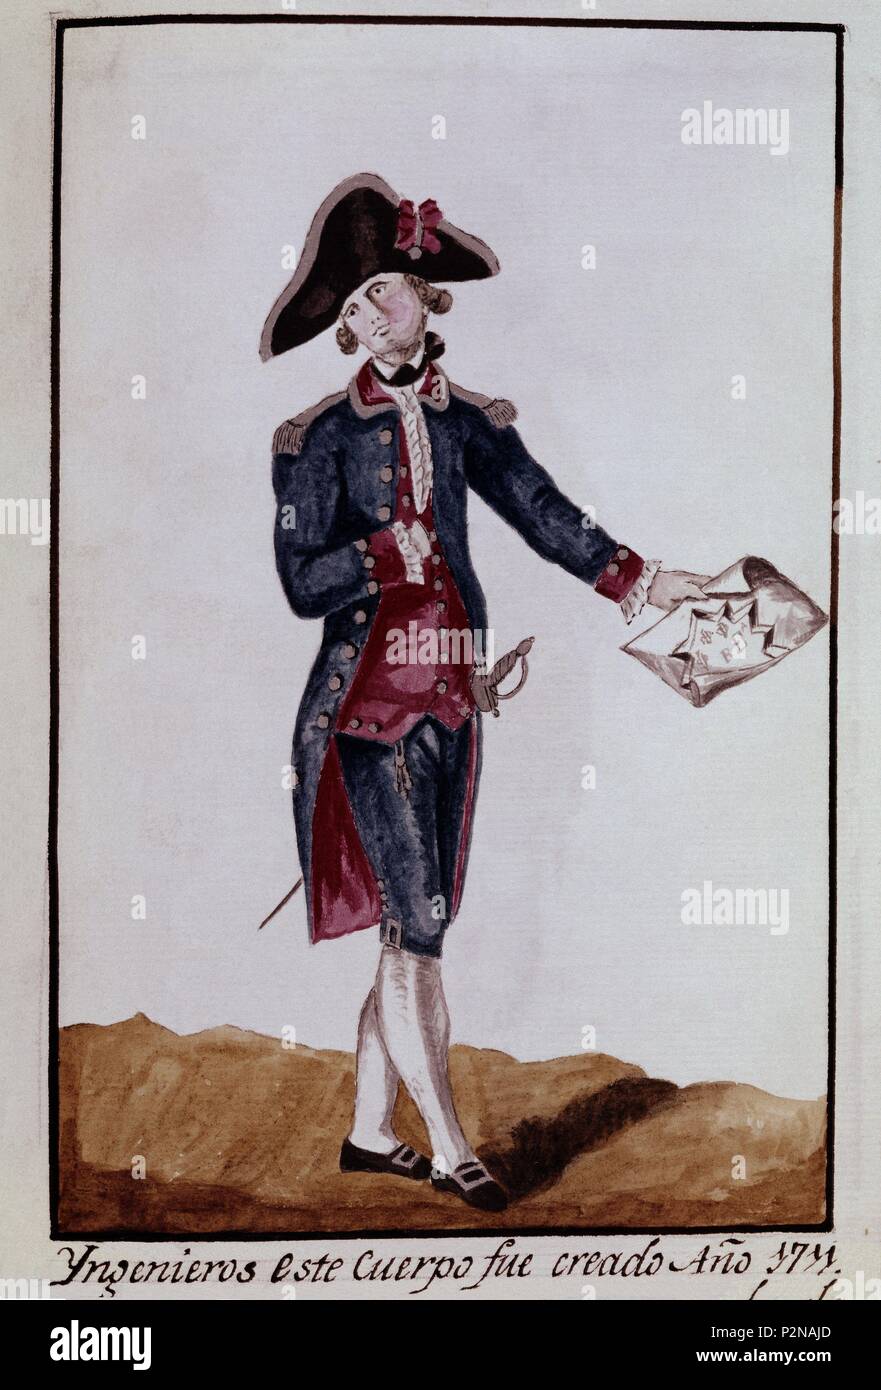 INGENIEROS CUERPO CREADO EN 1711. Location: ARCHIVO HISTORICO MILITAR, MADRID, SPAIN. Stock Photo